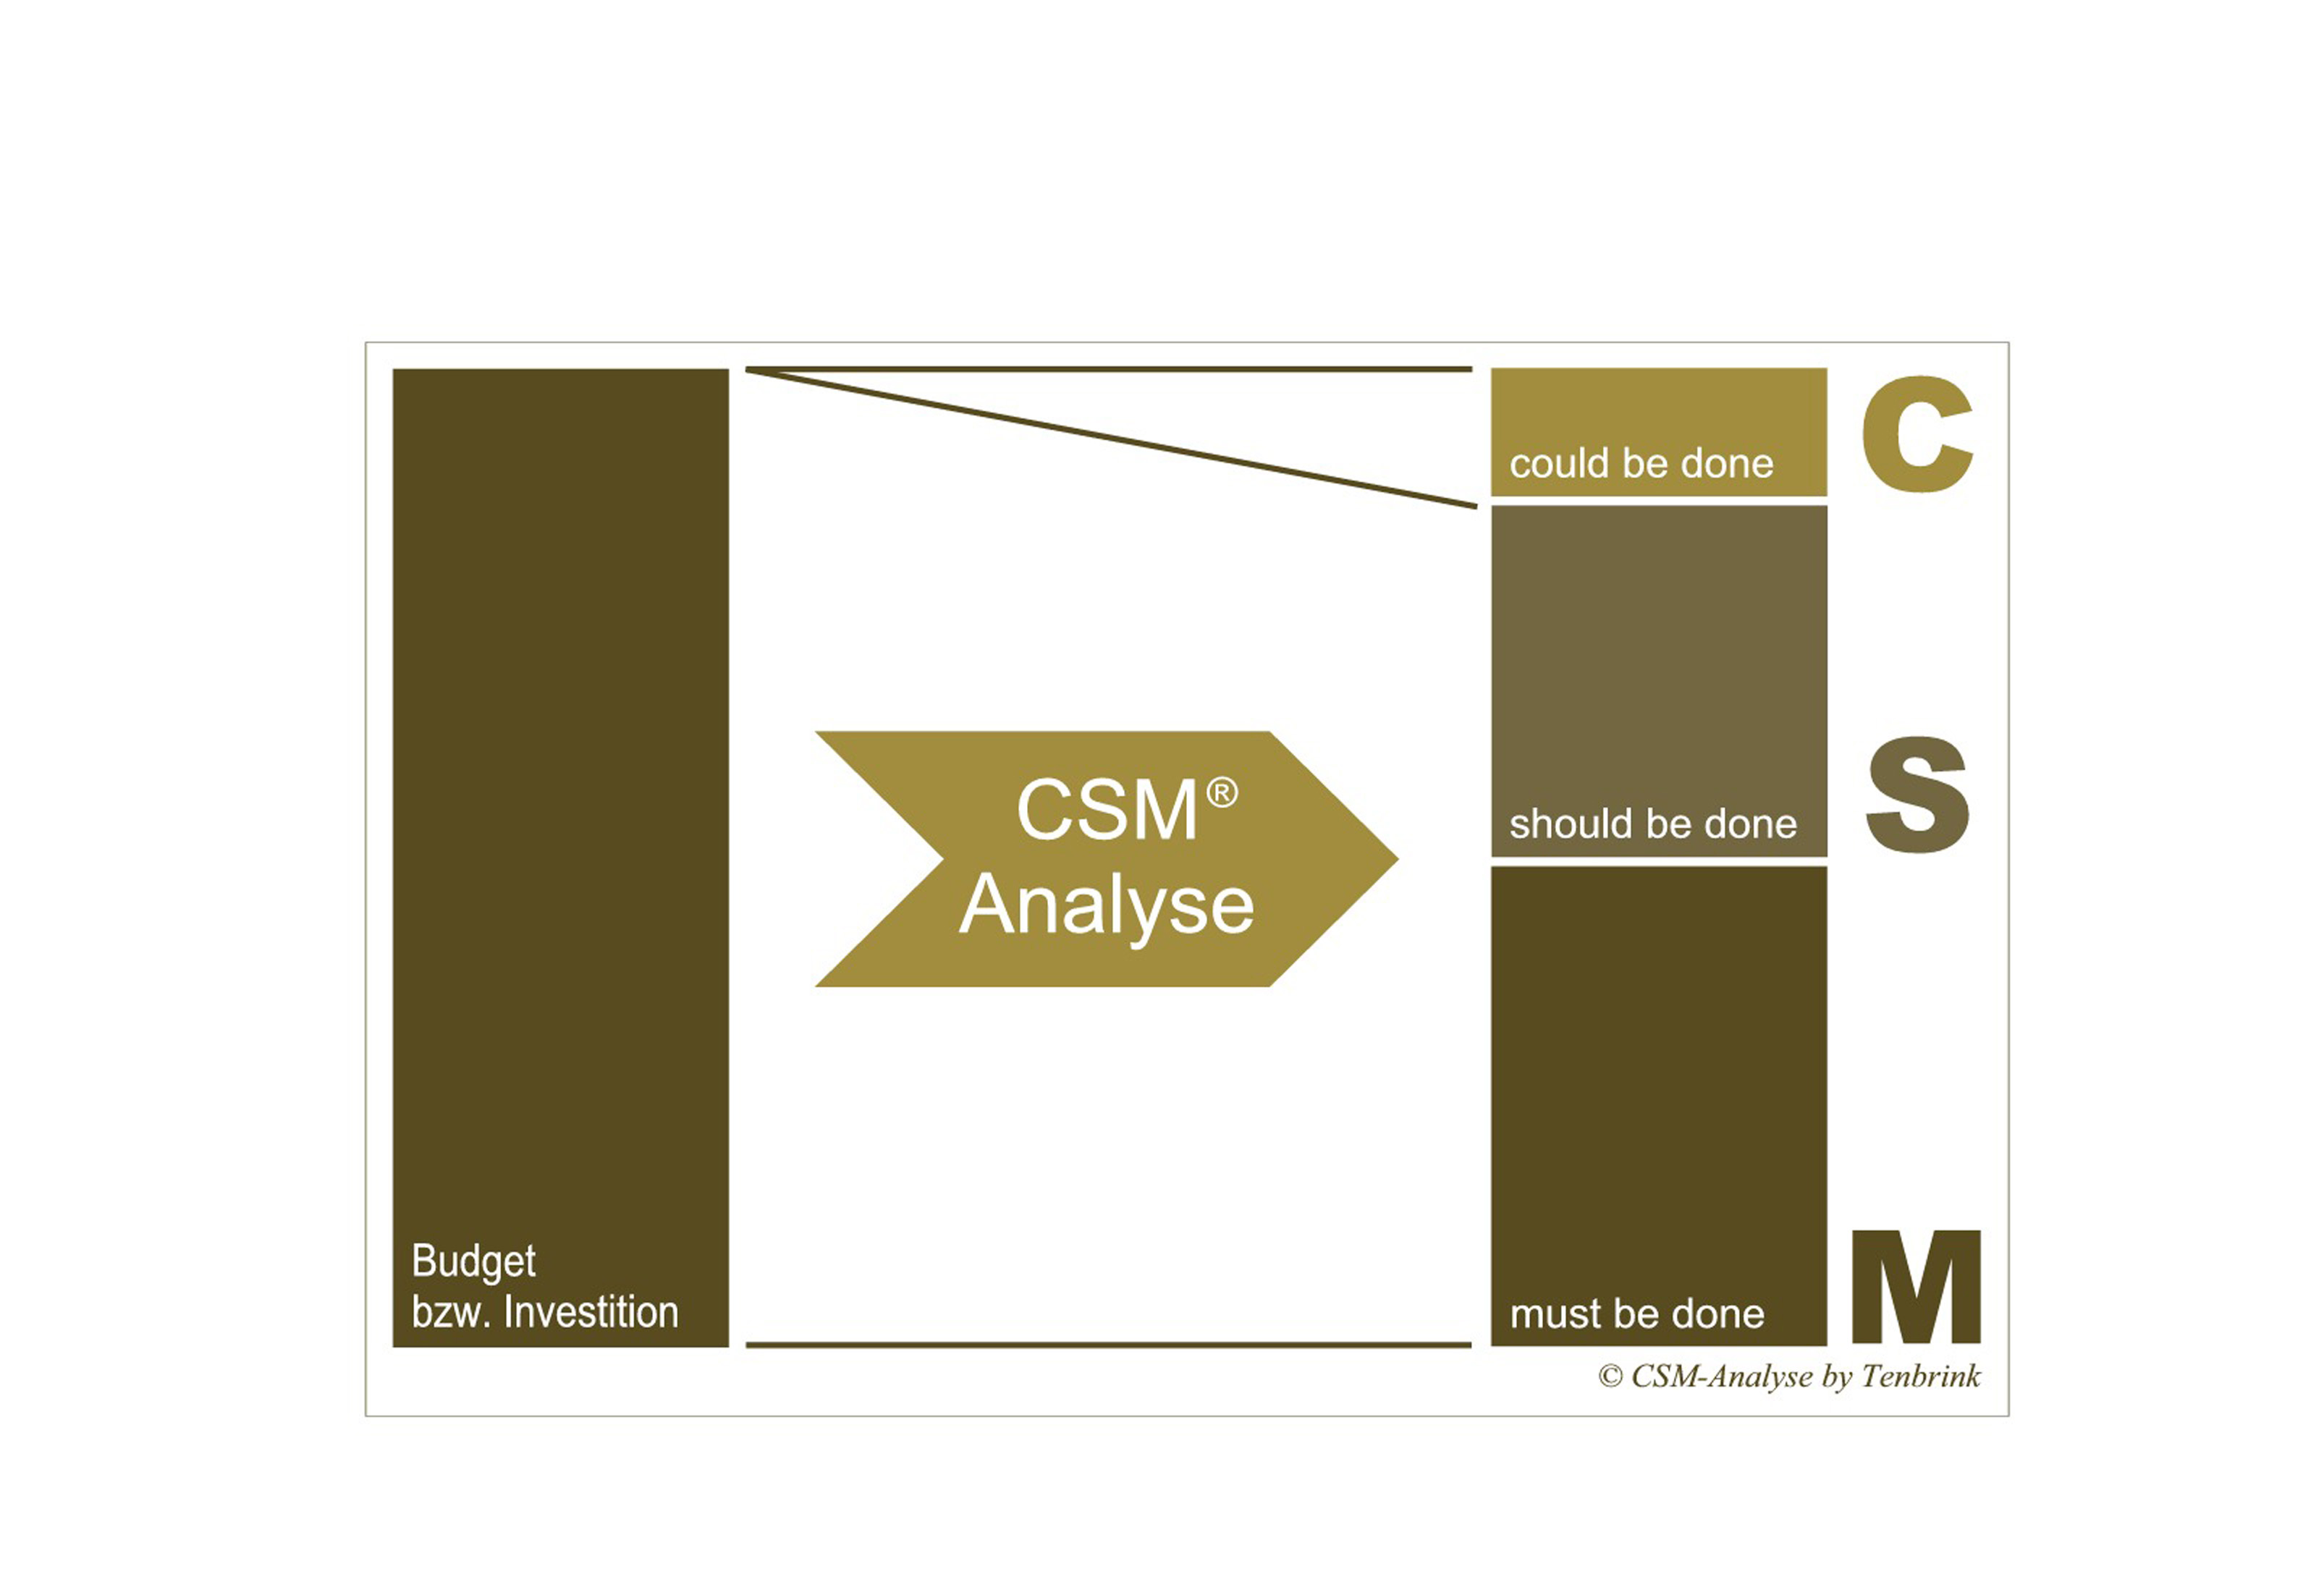 Die CSM-Analyse von Tenbrink Objekteinrichtungen ermöglicht eine Kosten-Nutzen-optimierte und zugleich nachhaltige Hotelrenovierung (Foto: Tenbrink Objekteinrichtungen)